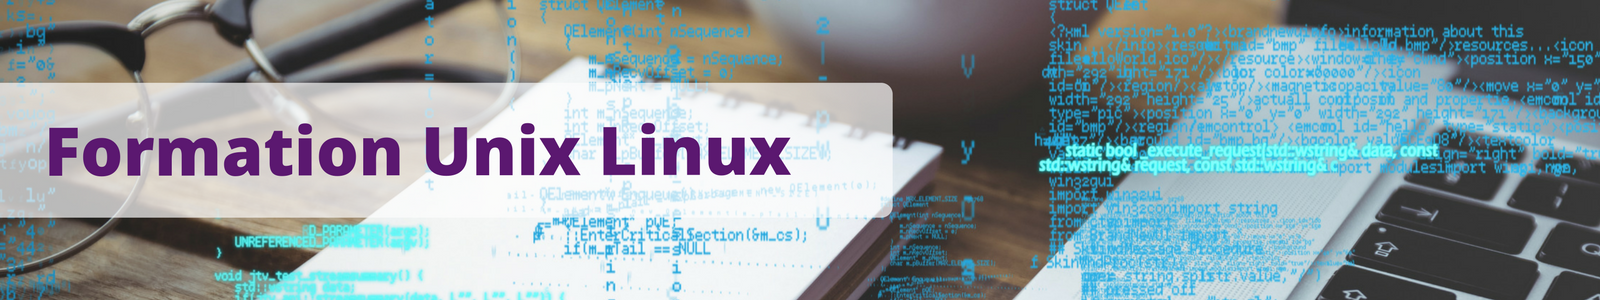 Formation Unix Linux - Liste de nos formations 